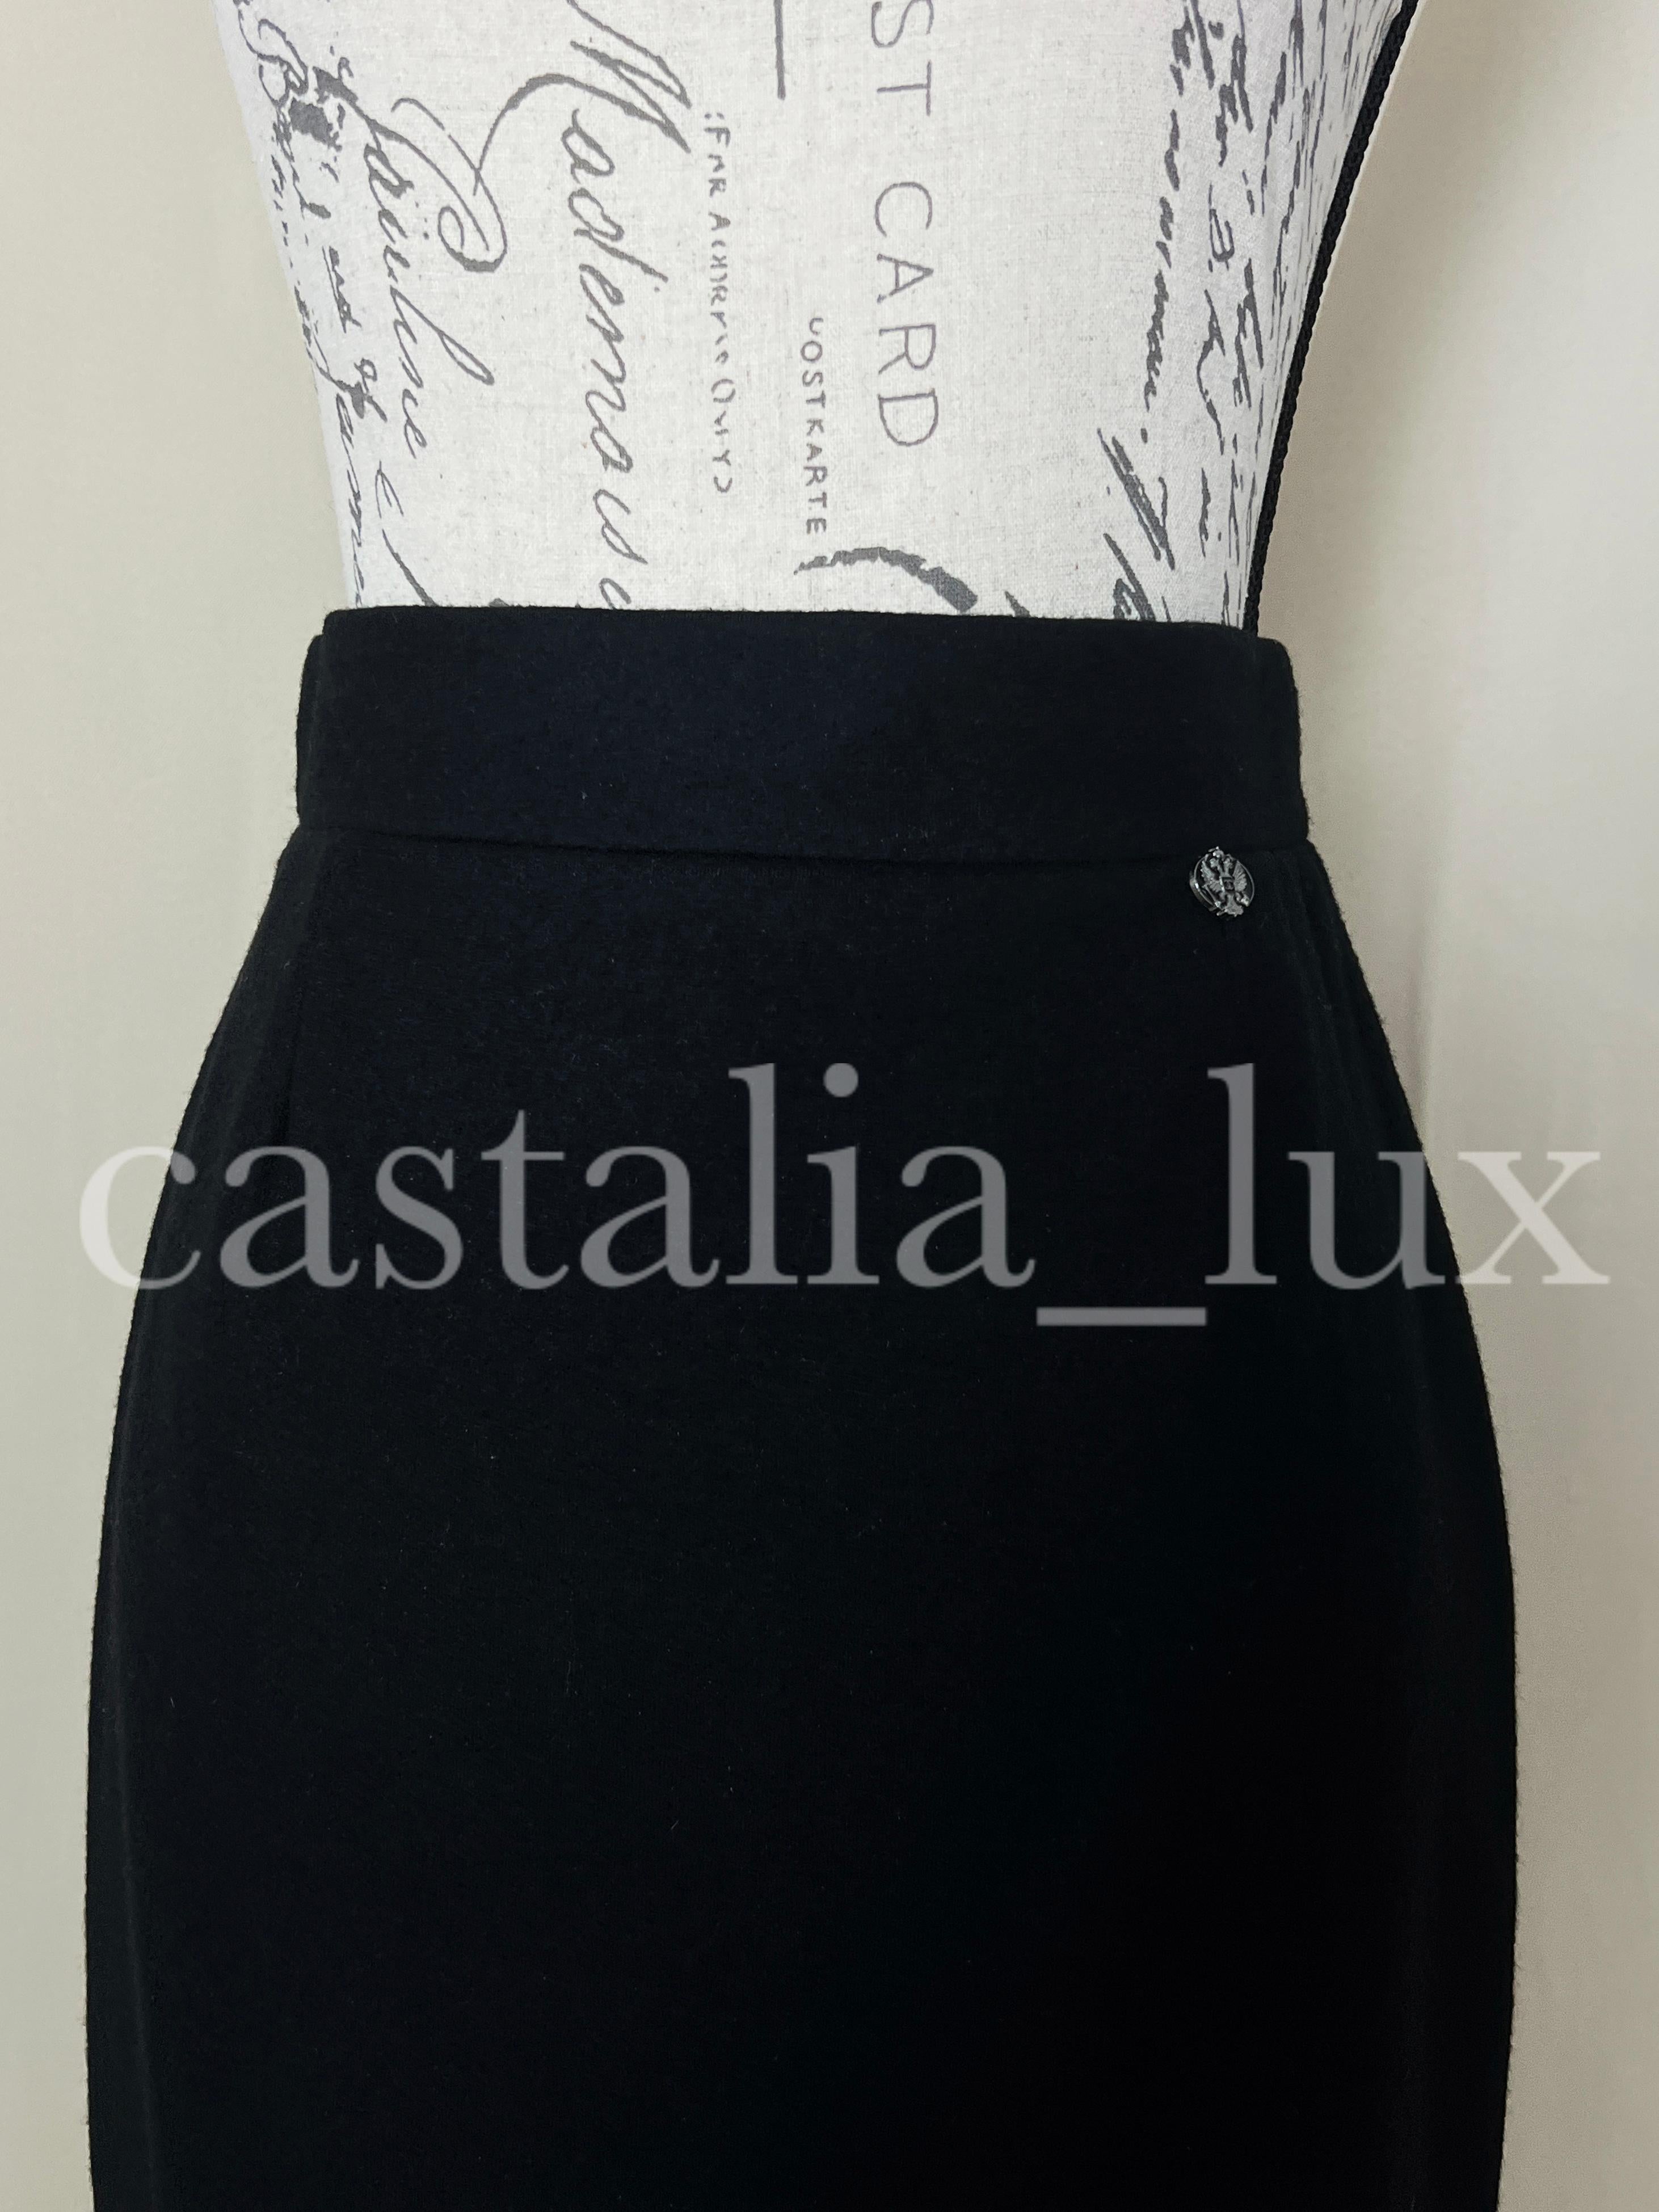 Neuer schwarzer Bleistiftrock Chanel mit CC-Logo-Adler-Charme an der Taille.
Seidenfutter, Größenbezeichnung 38 FR. Nie getragen